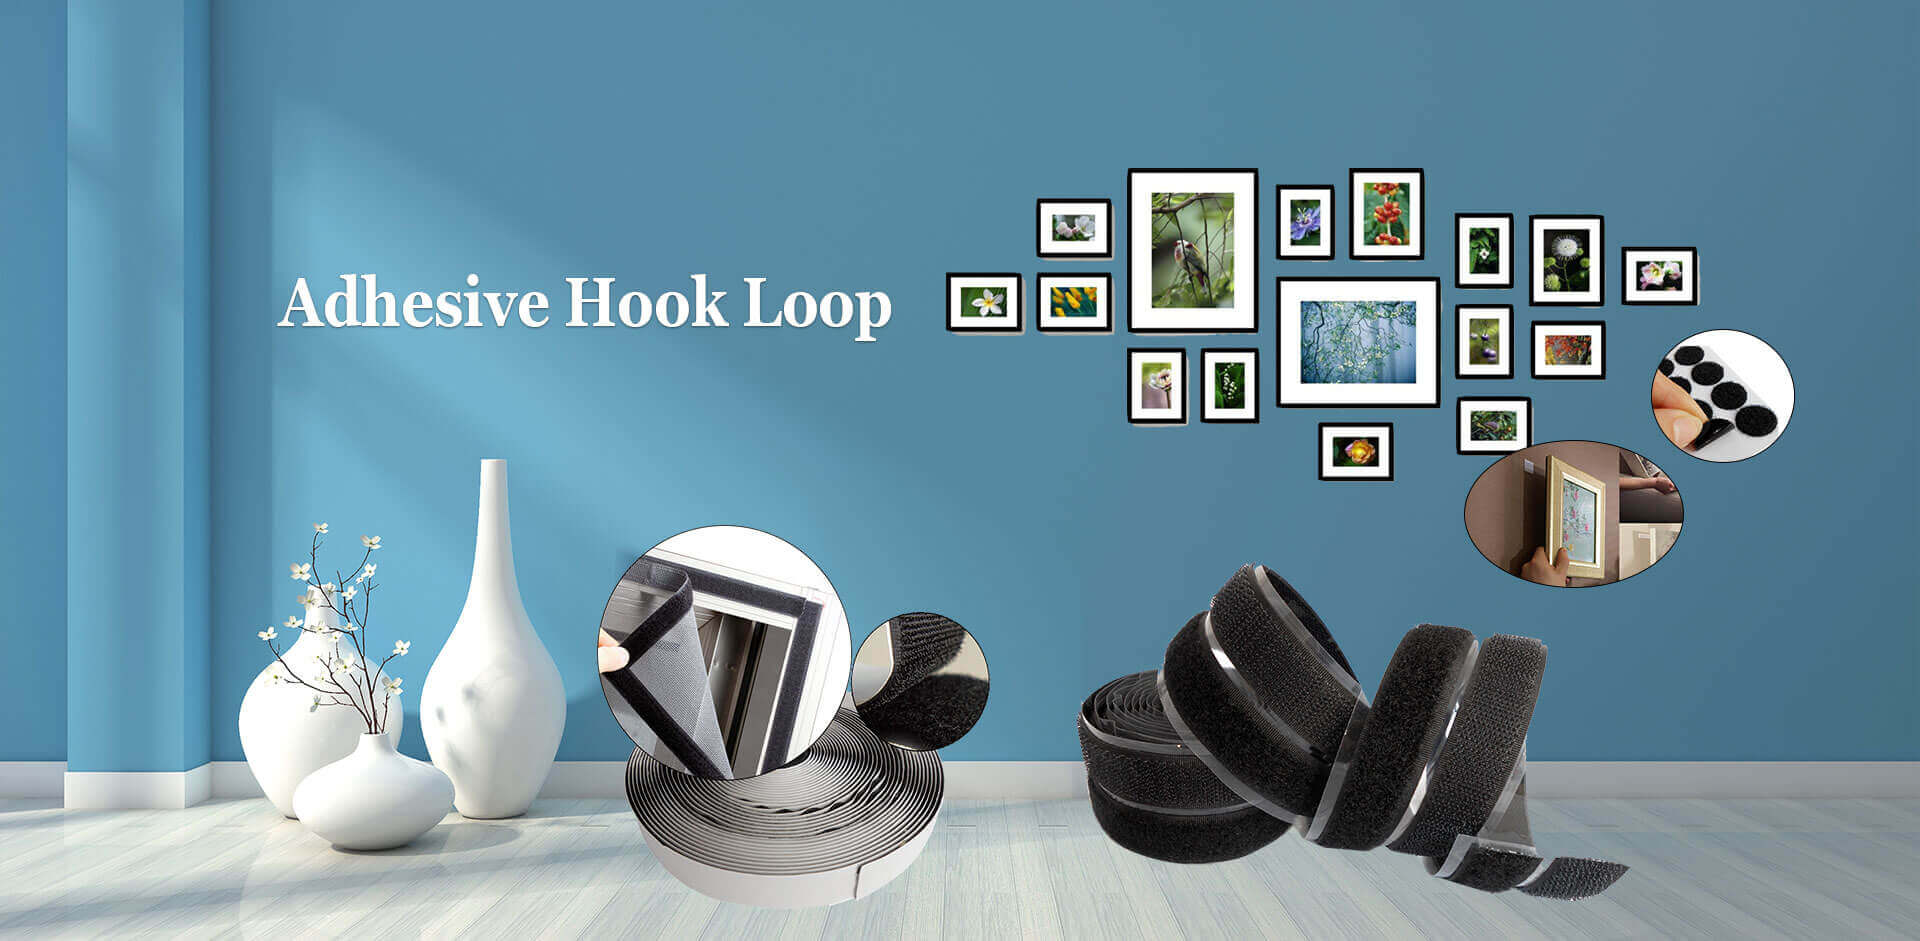 Adhesive Hook Loop